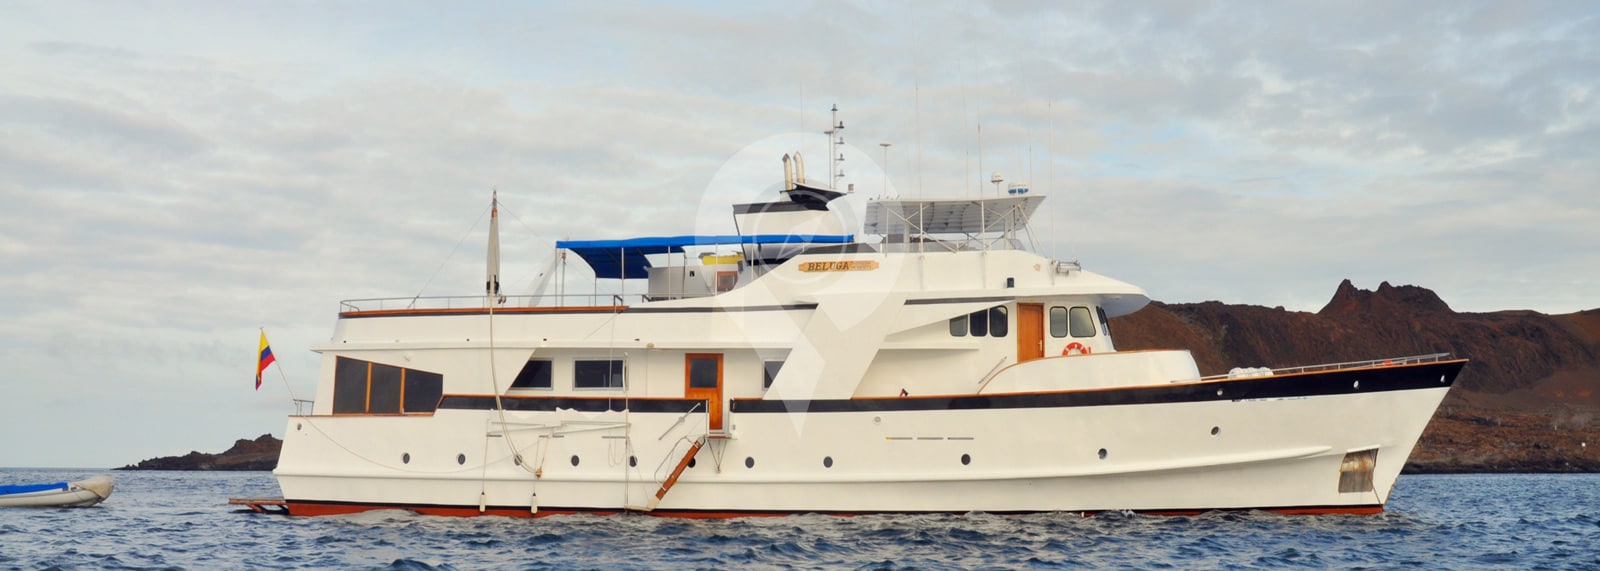 Beluga Galapagos Yacht